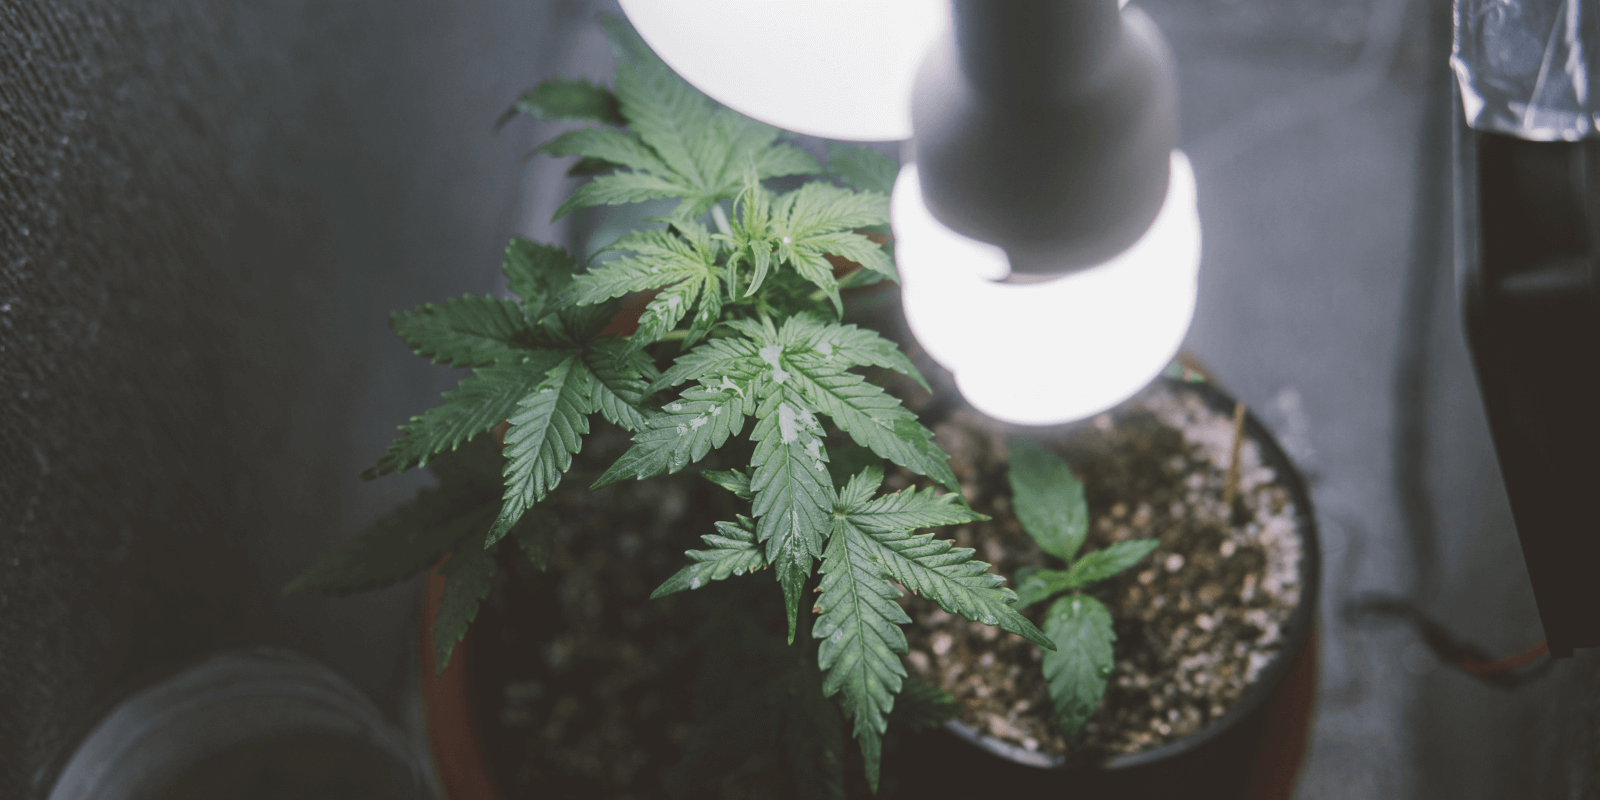 Buying bulk marijuana seeds for indoor growing